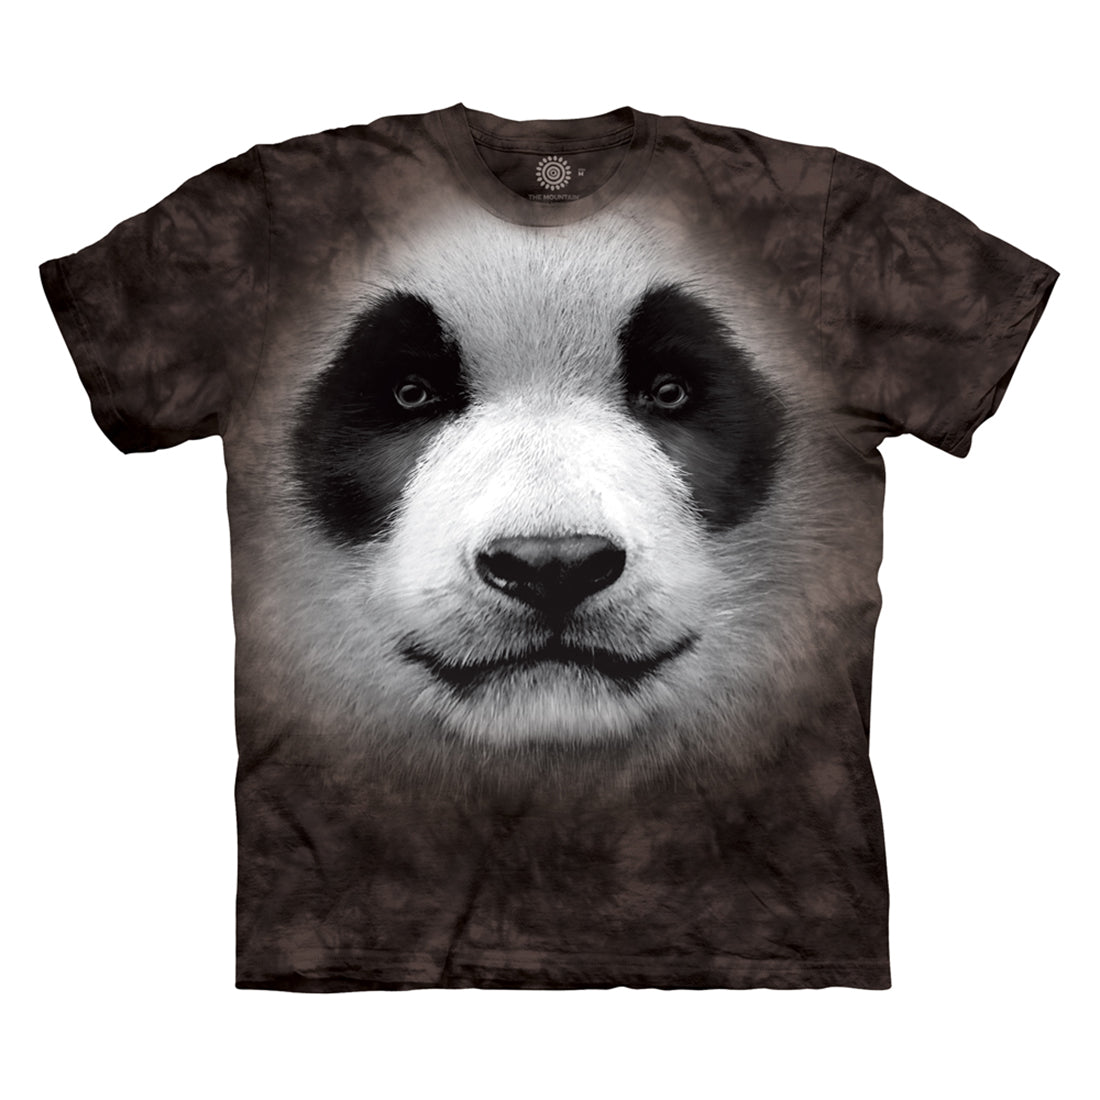 The Mountain Men's Big Face Panda T-Shirt